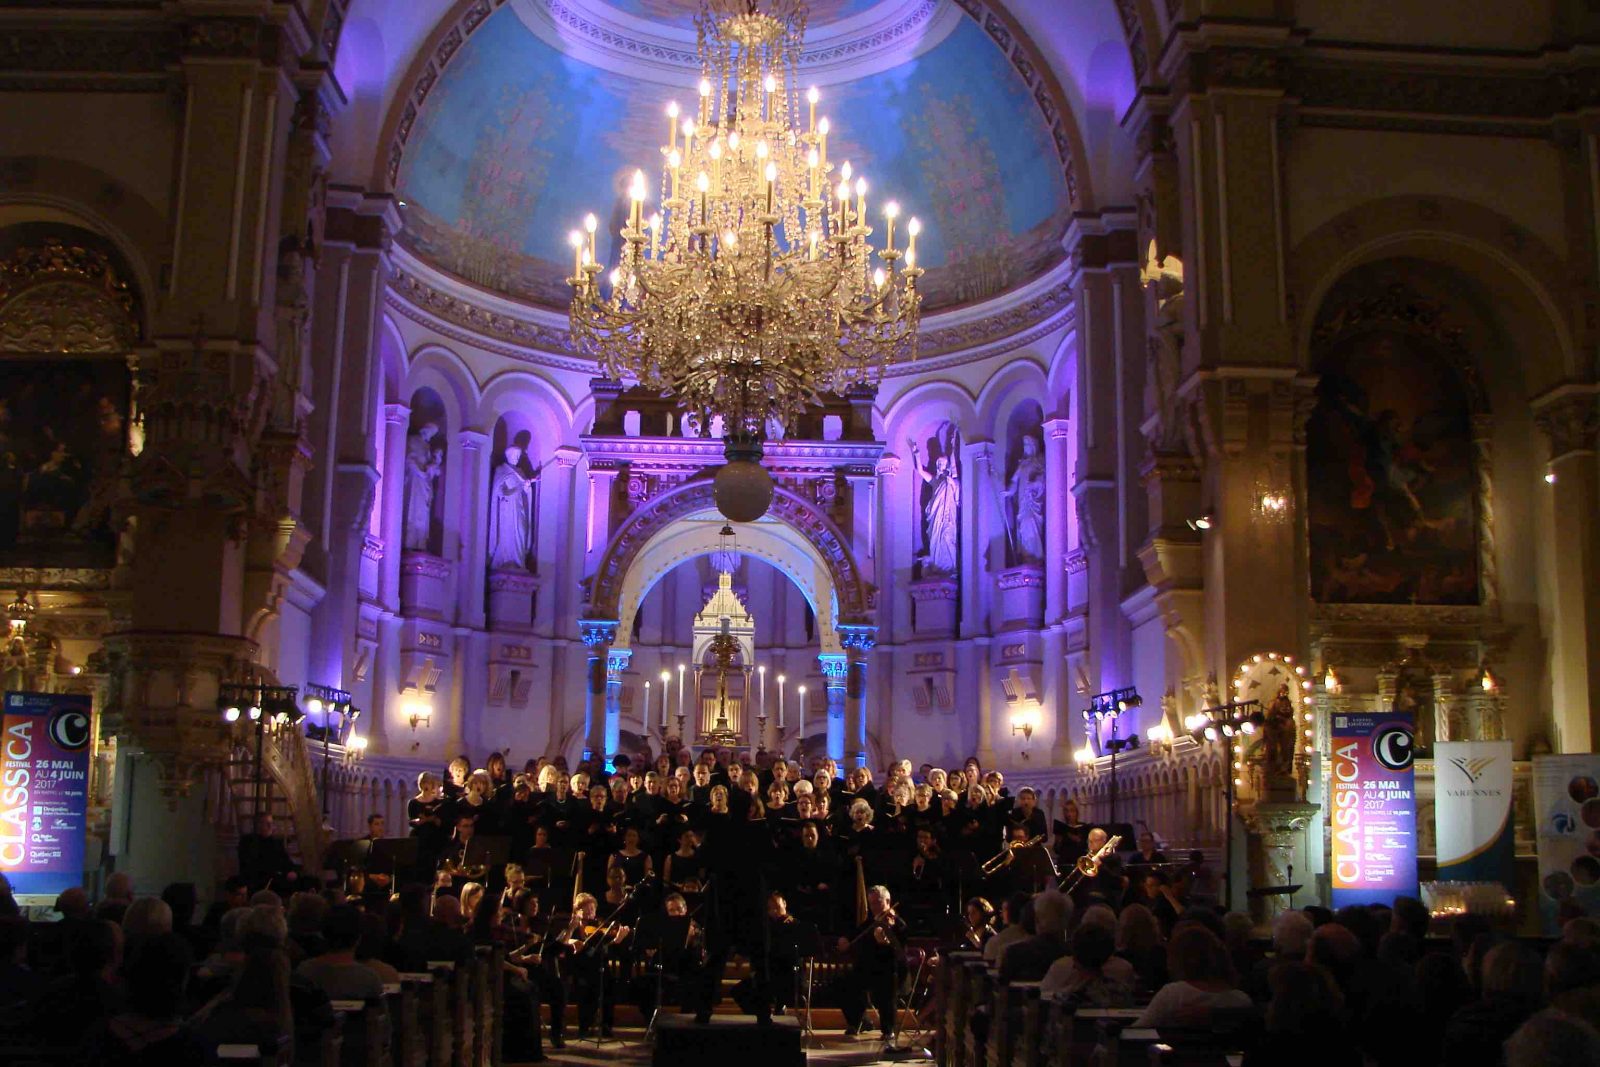 La basilique Sainte-Anne de Varennes vibre au rythme de la Grande messe en ut mineur de Mozart